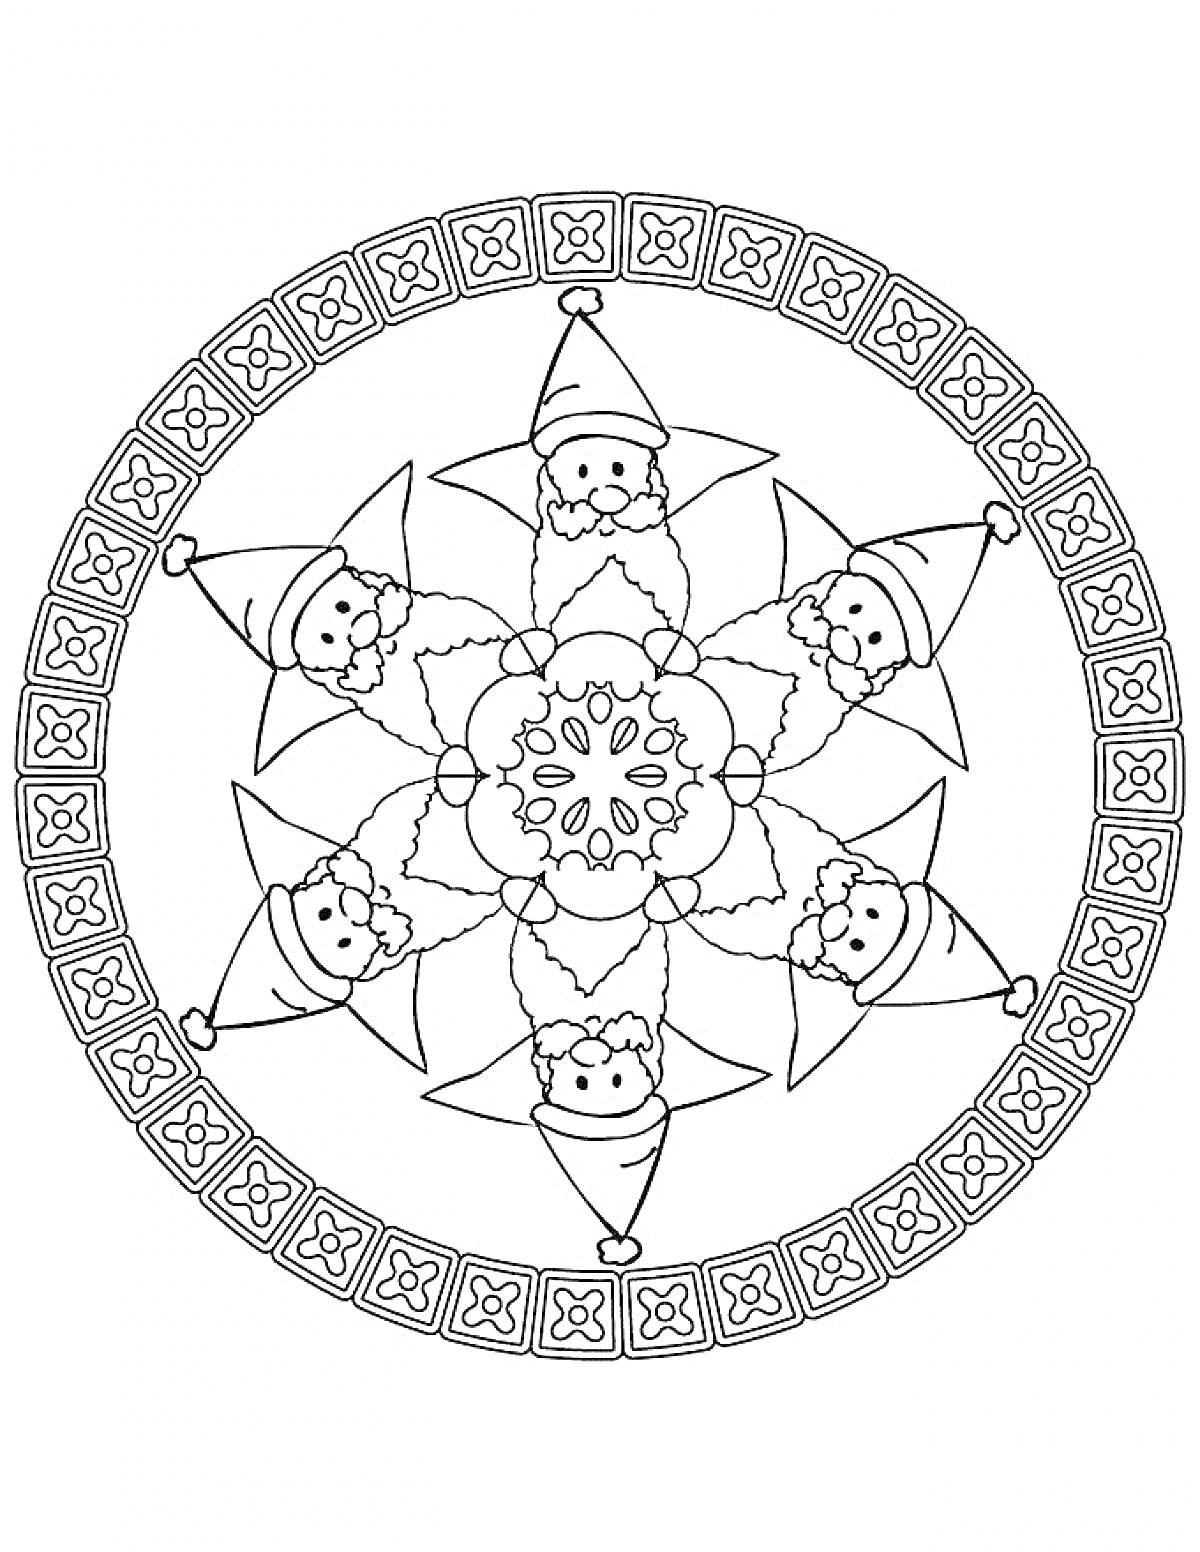 Мандала с шестью Дедами Морозами и орнаментом по кругу